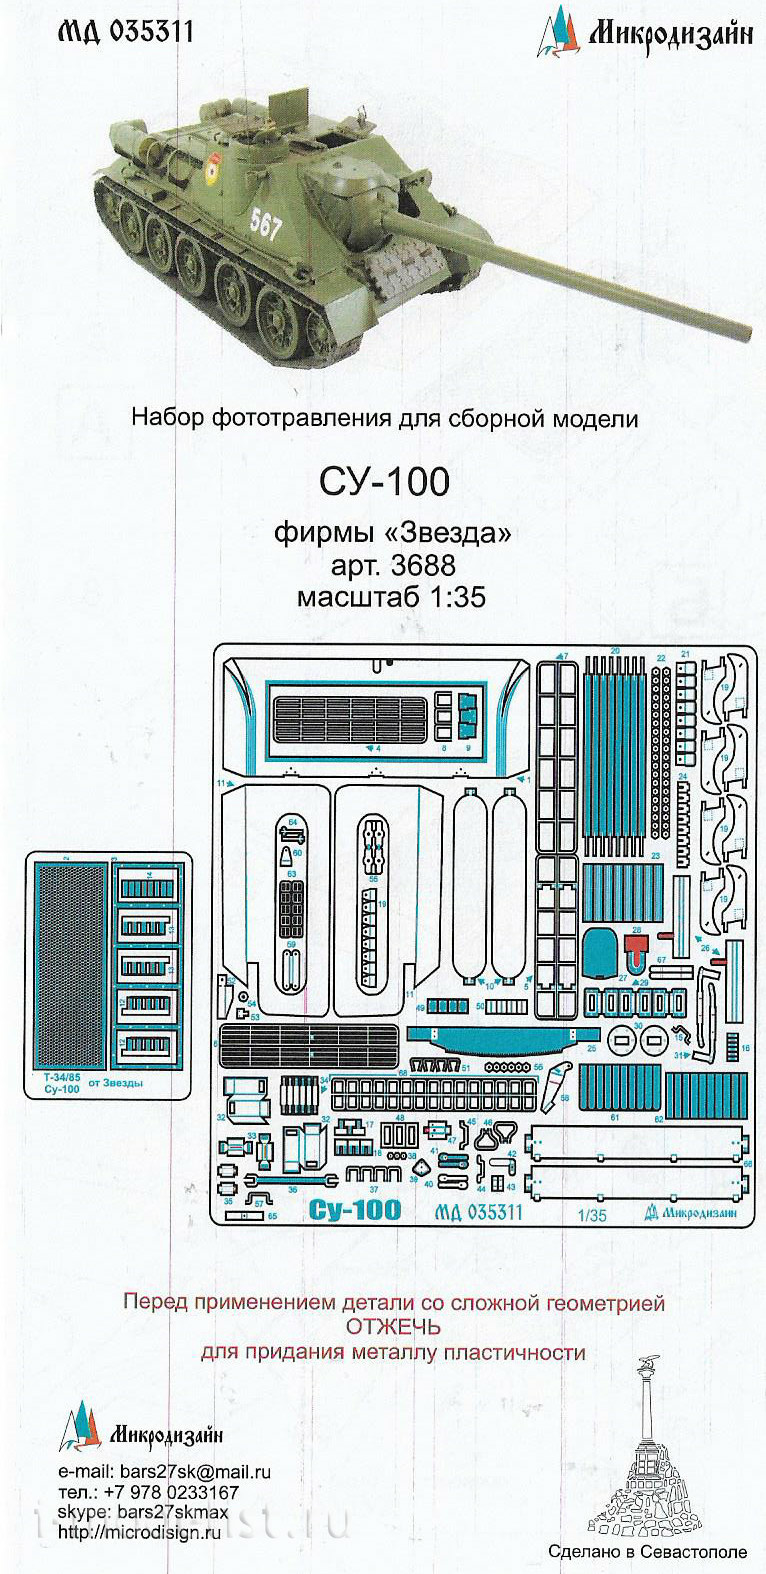 035311 Микродизайн 1/35 Набор фототравления для Су-100. Основной набор (Звезда)